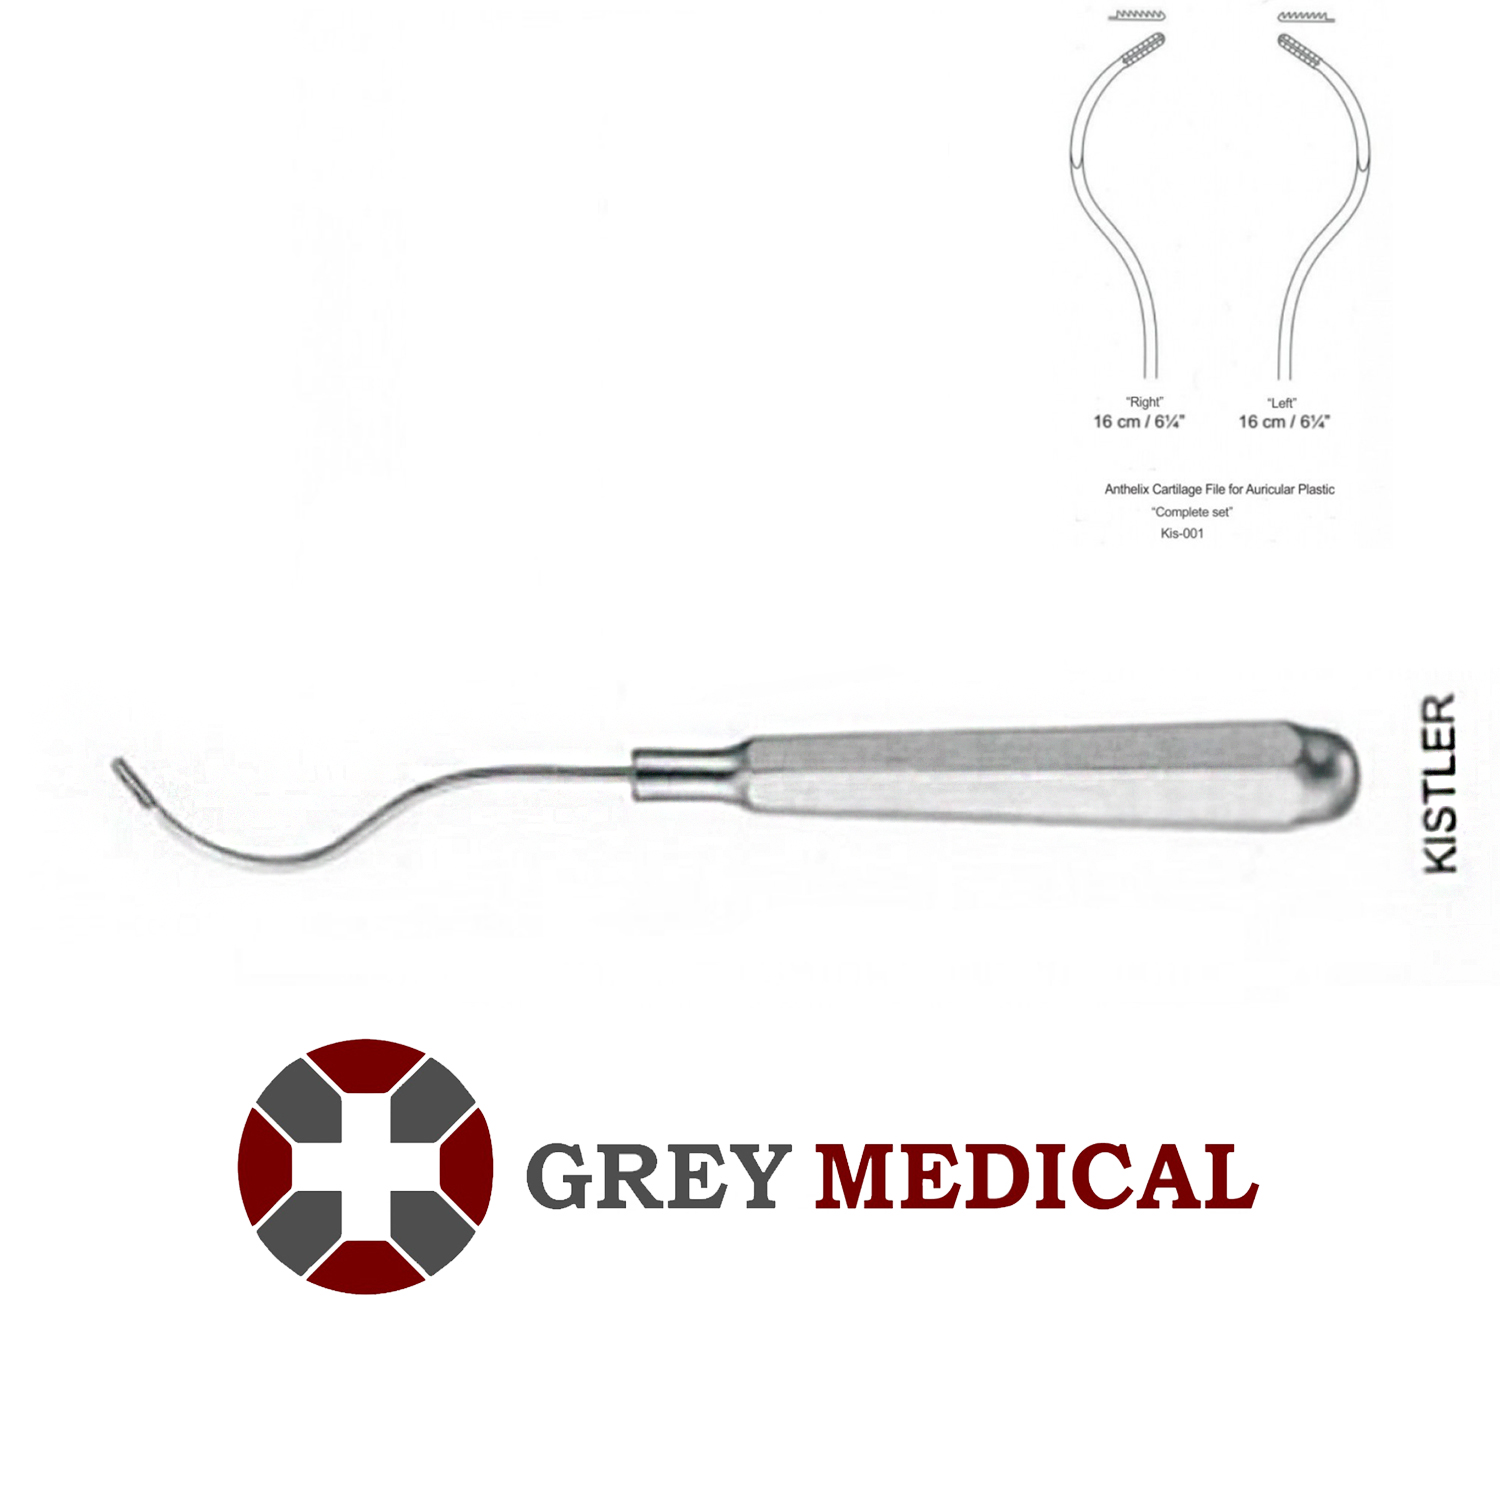 Buy Kistler Anthelix Cartilage File Online | Grey Medical